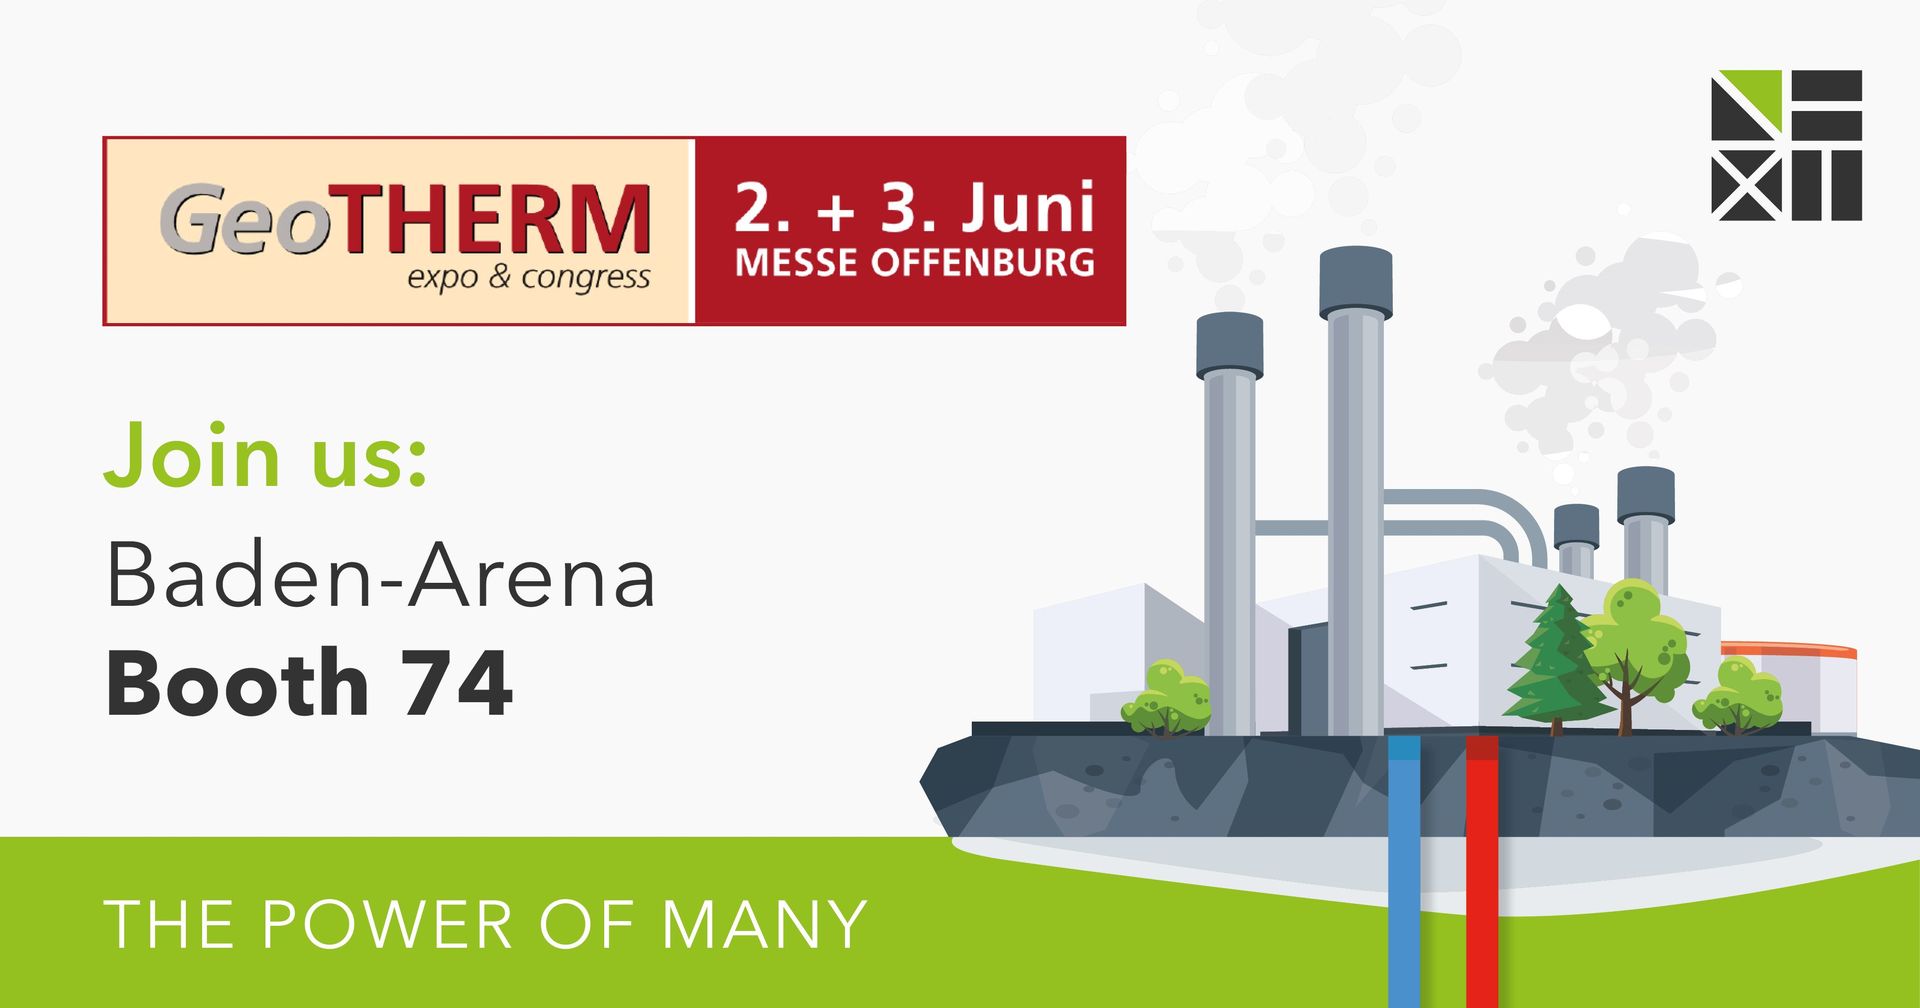 Next Kraftwerke nimmt an der diesjährigen GeoTHERM Expo & congress teil